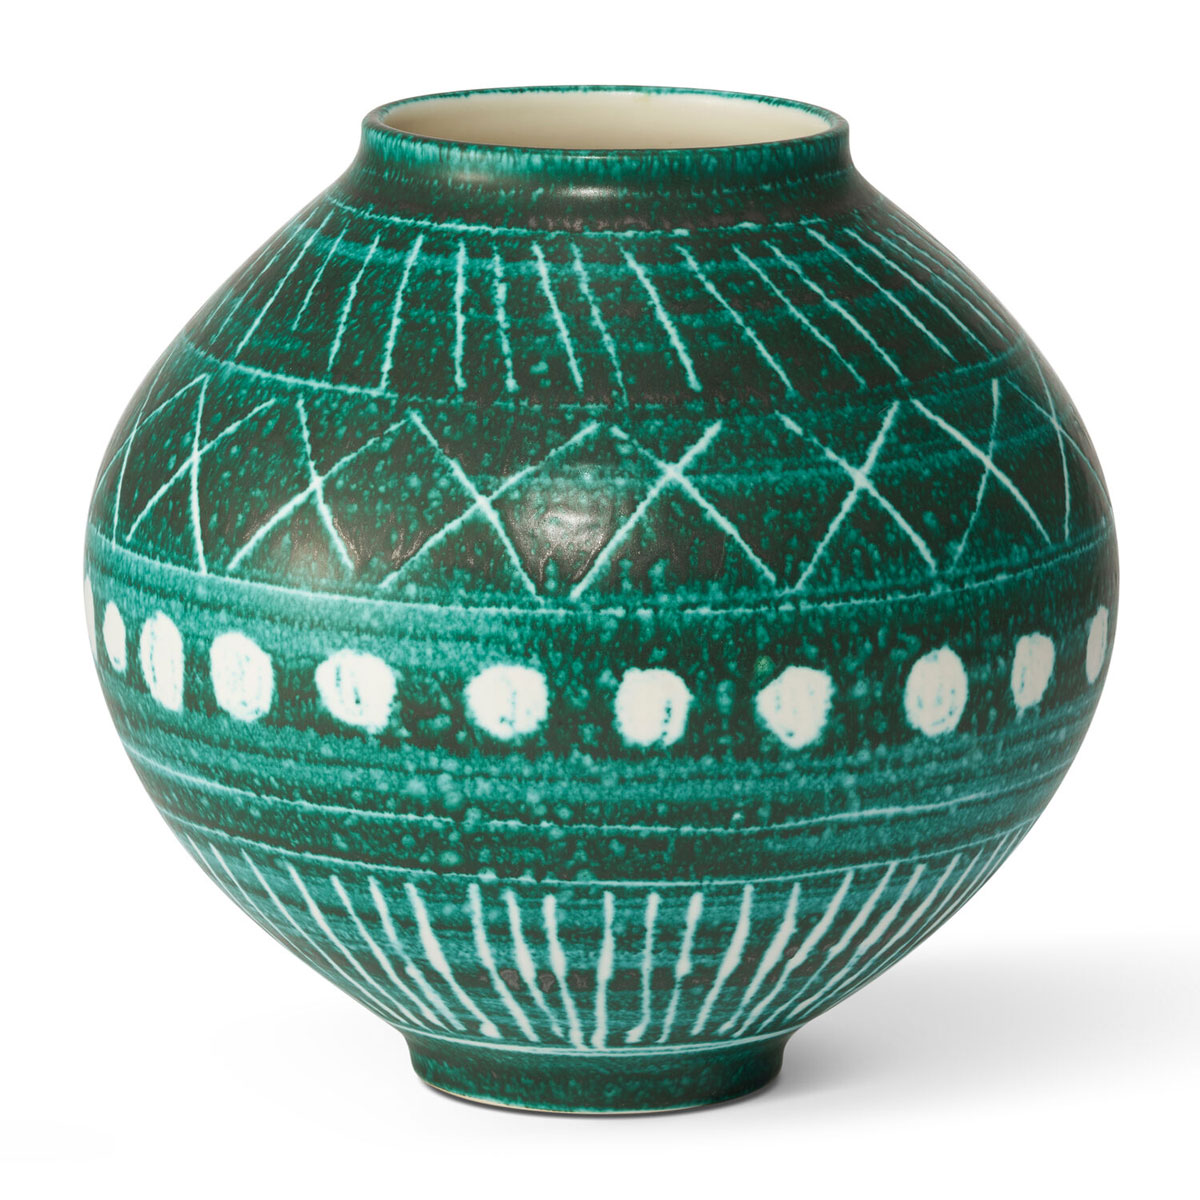 Aerin 9.2" Calinda Moon Vase, Remini Green